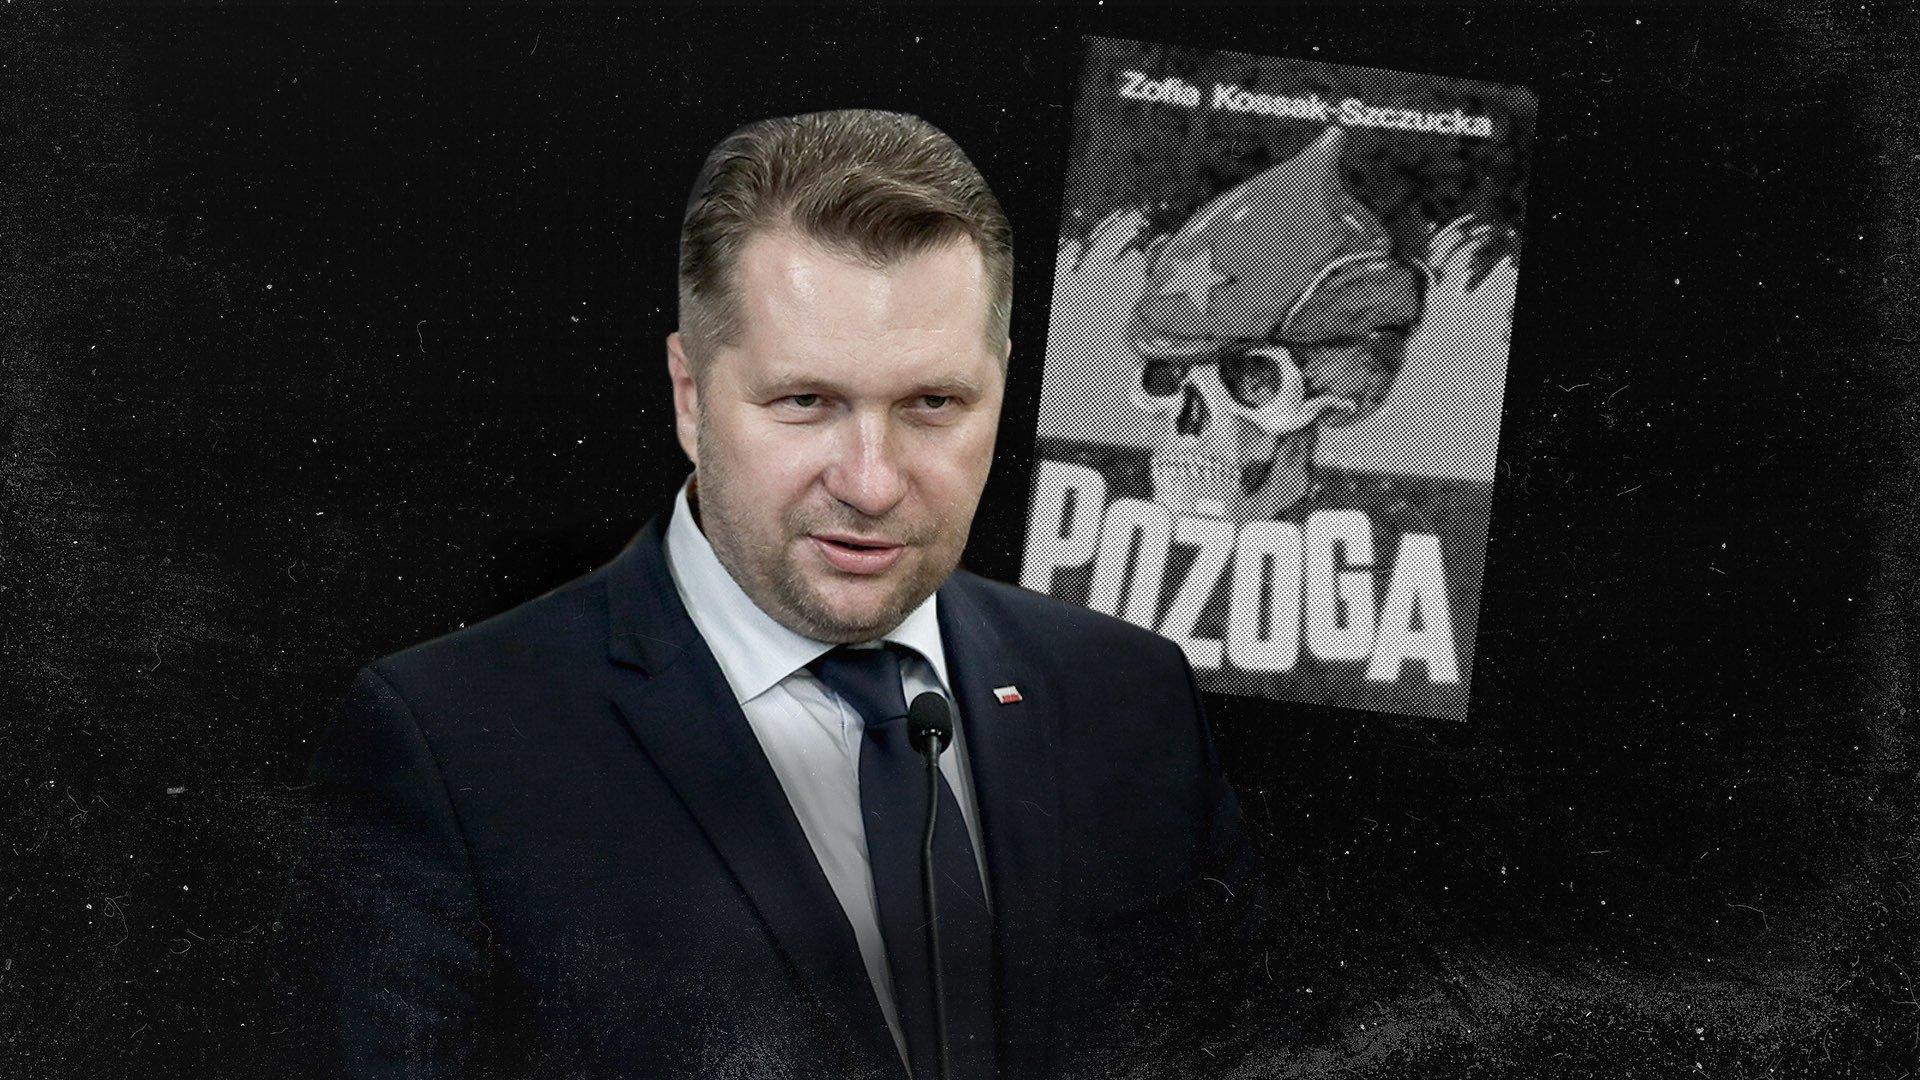 Przemysław Czarnek i okładka książki "Pożoga", której autorką jest Zofia Kossak-Szczucka